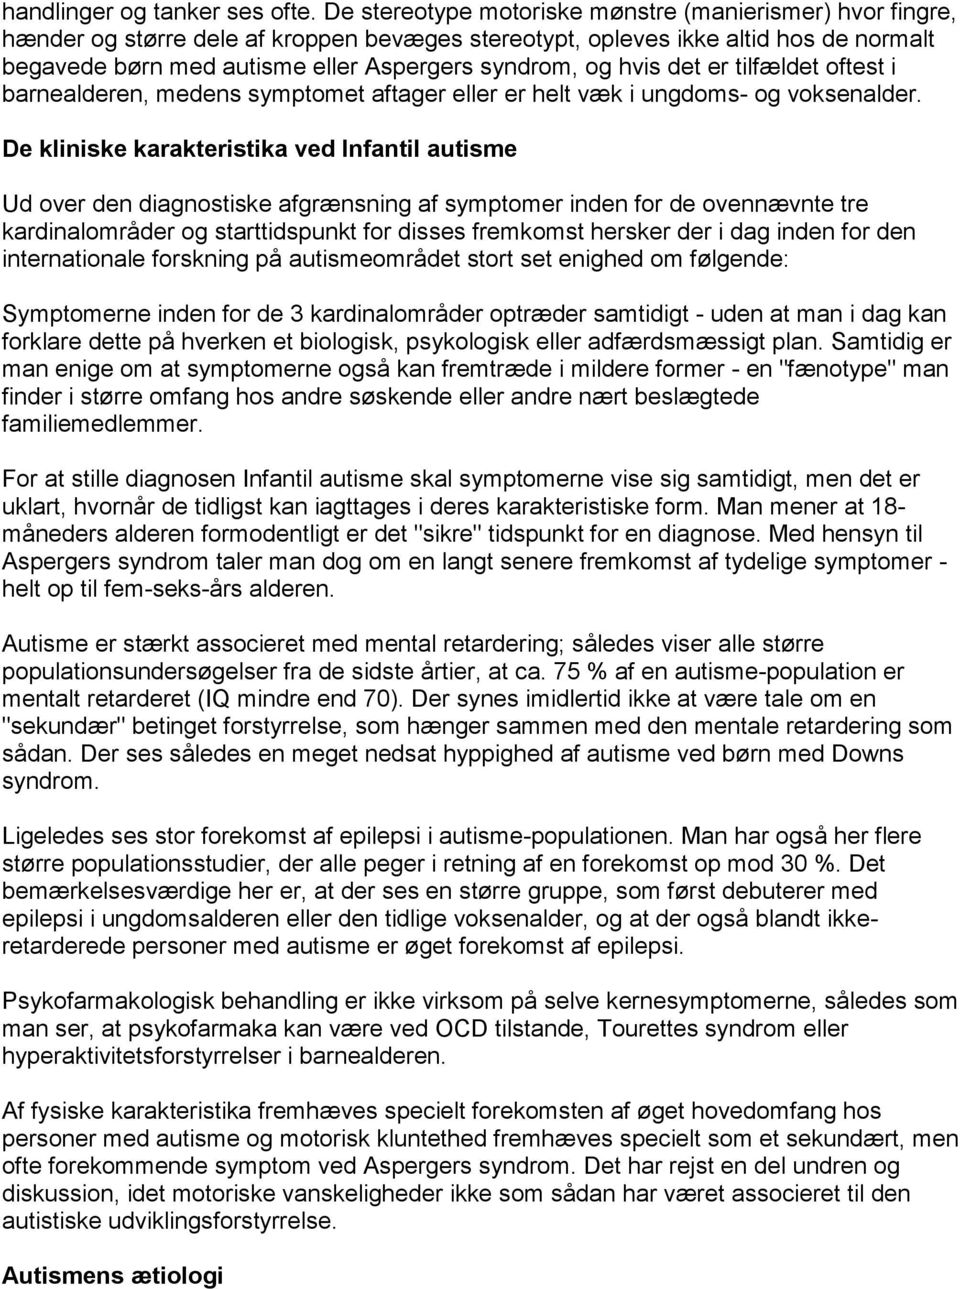 afgrænsning mellem autisme Aspergers syndrom set i voksenpsykiatrisk lys - PDF Free Download